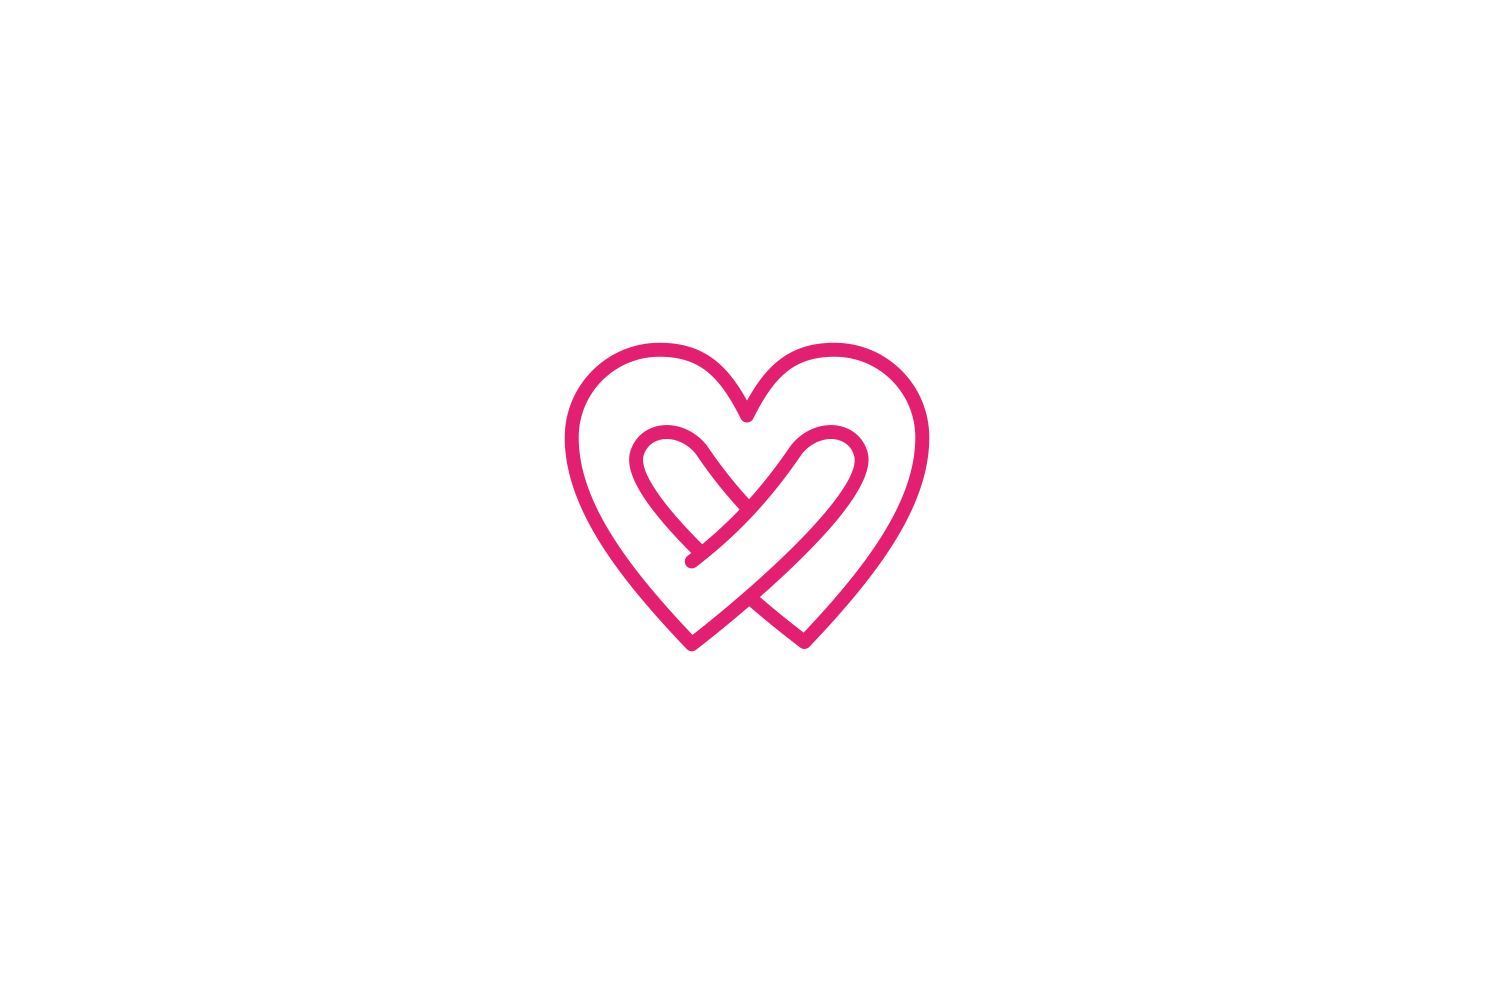 Love Logo Heart Design Hug (Graphic) by Bentang Tebe · Creative Fabrica - Love Logo Heart Design Hug (Graphic) by Bentang Tebe · Creative Fabrica -   15 heart fitness Logo ideas